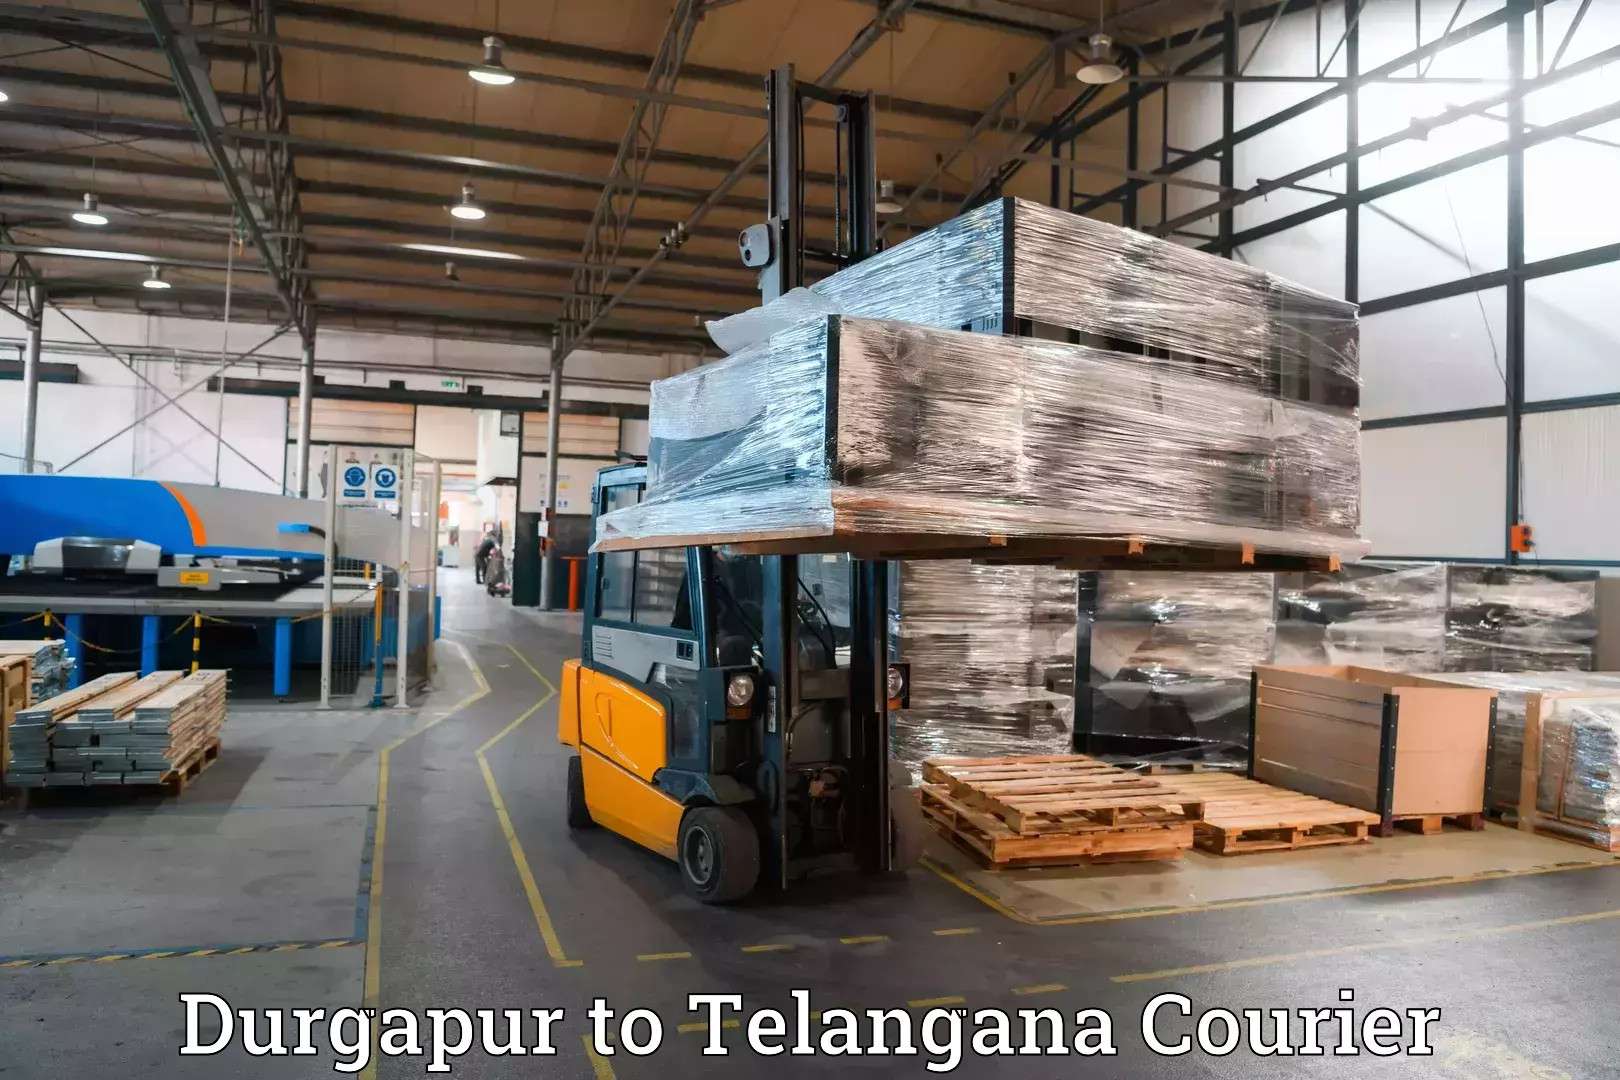 Luggage transport consultancy Durgapur to Rudrangi